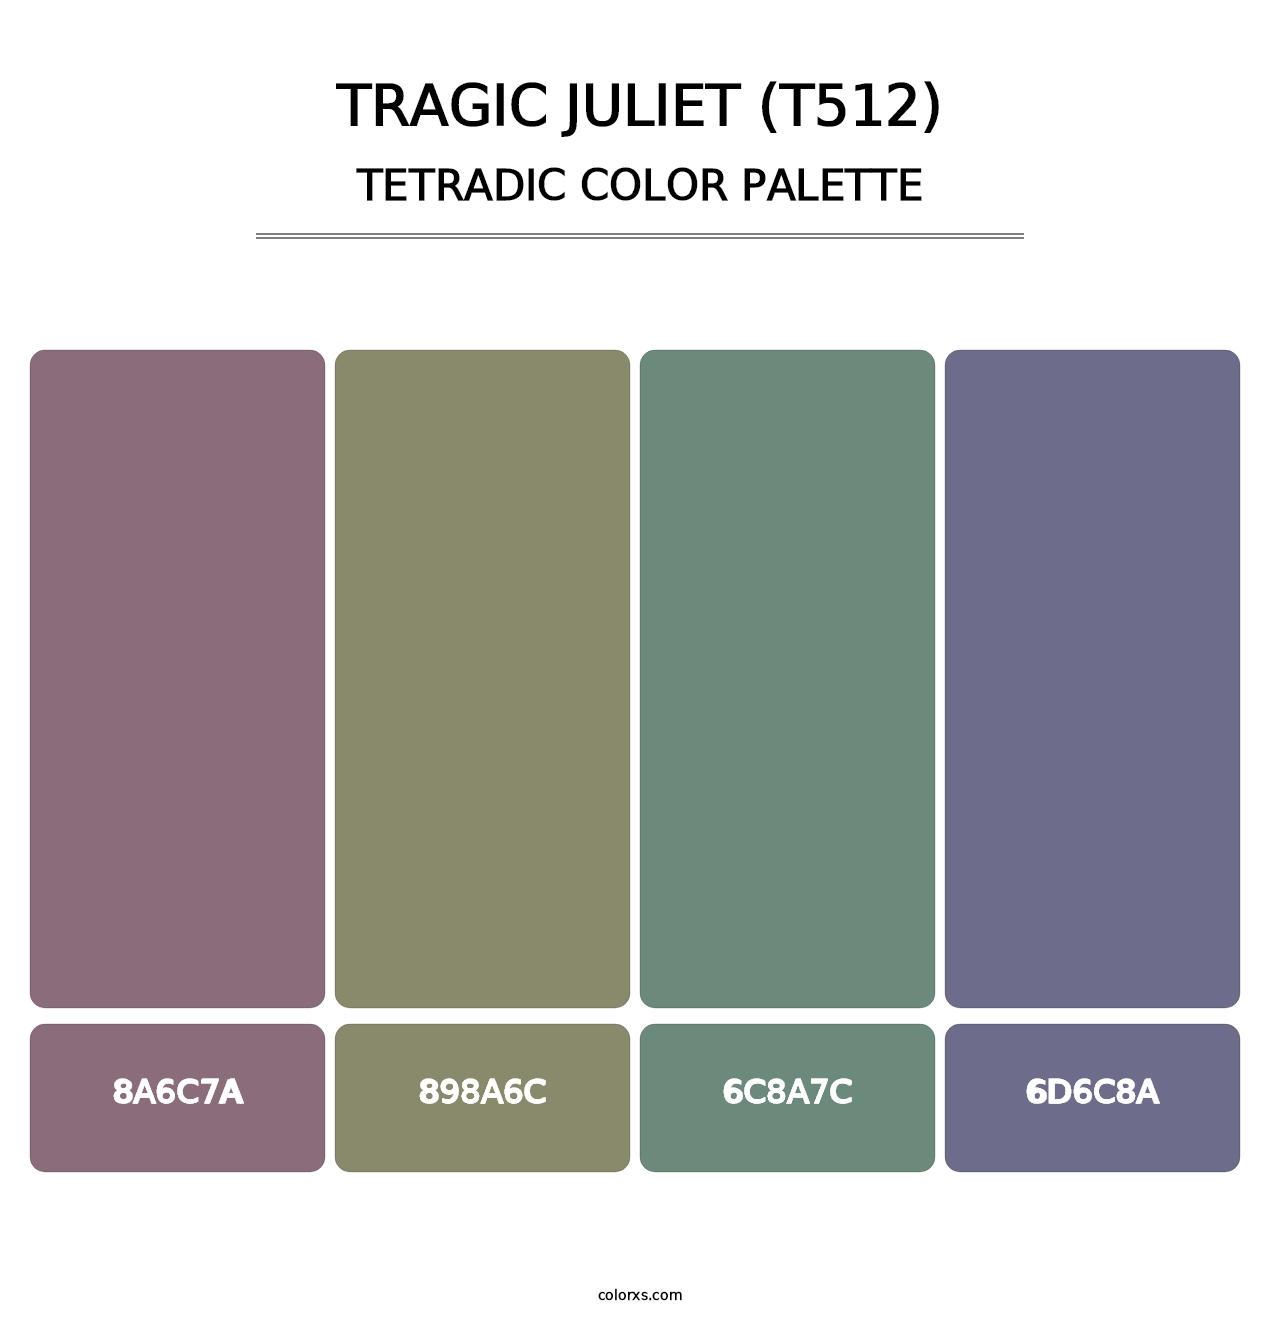 Tragic Juliet (T512) - Tetradic Color Palette